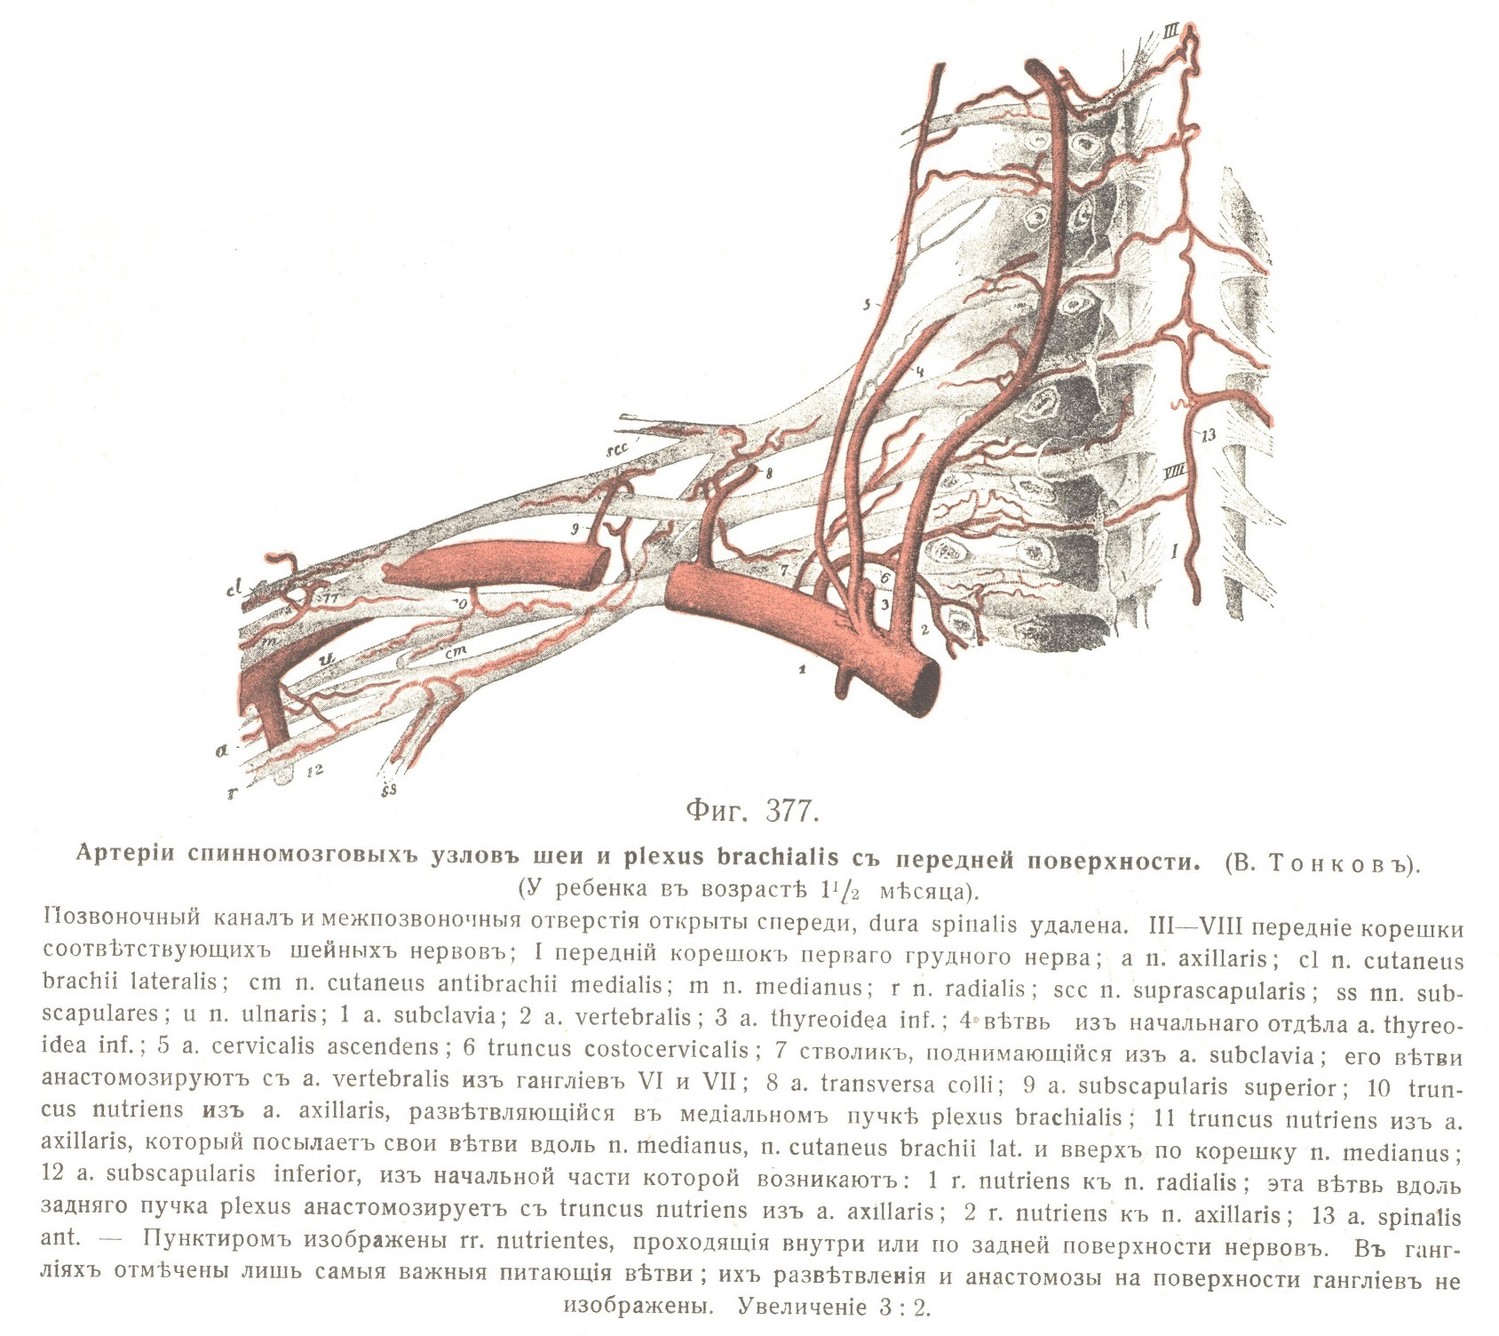 Артеріи спинномозговыхъ узловъ шеи и plexus brachialis съ передней поверхности